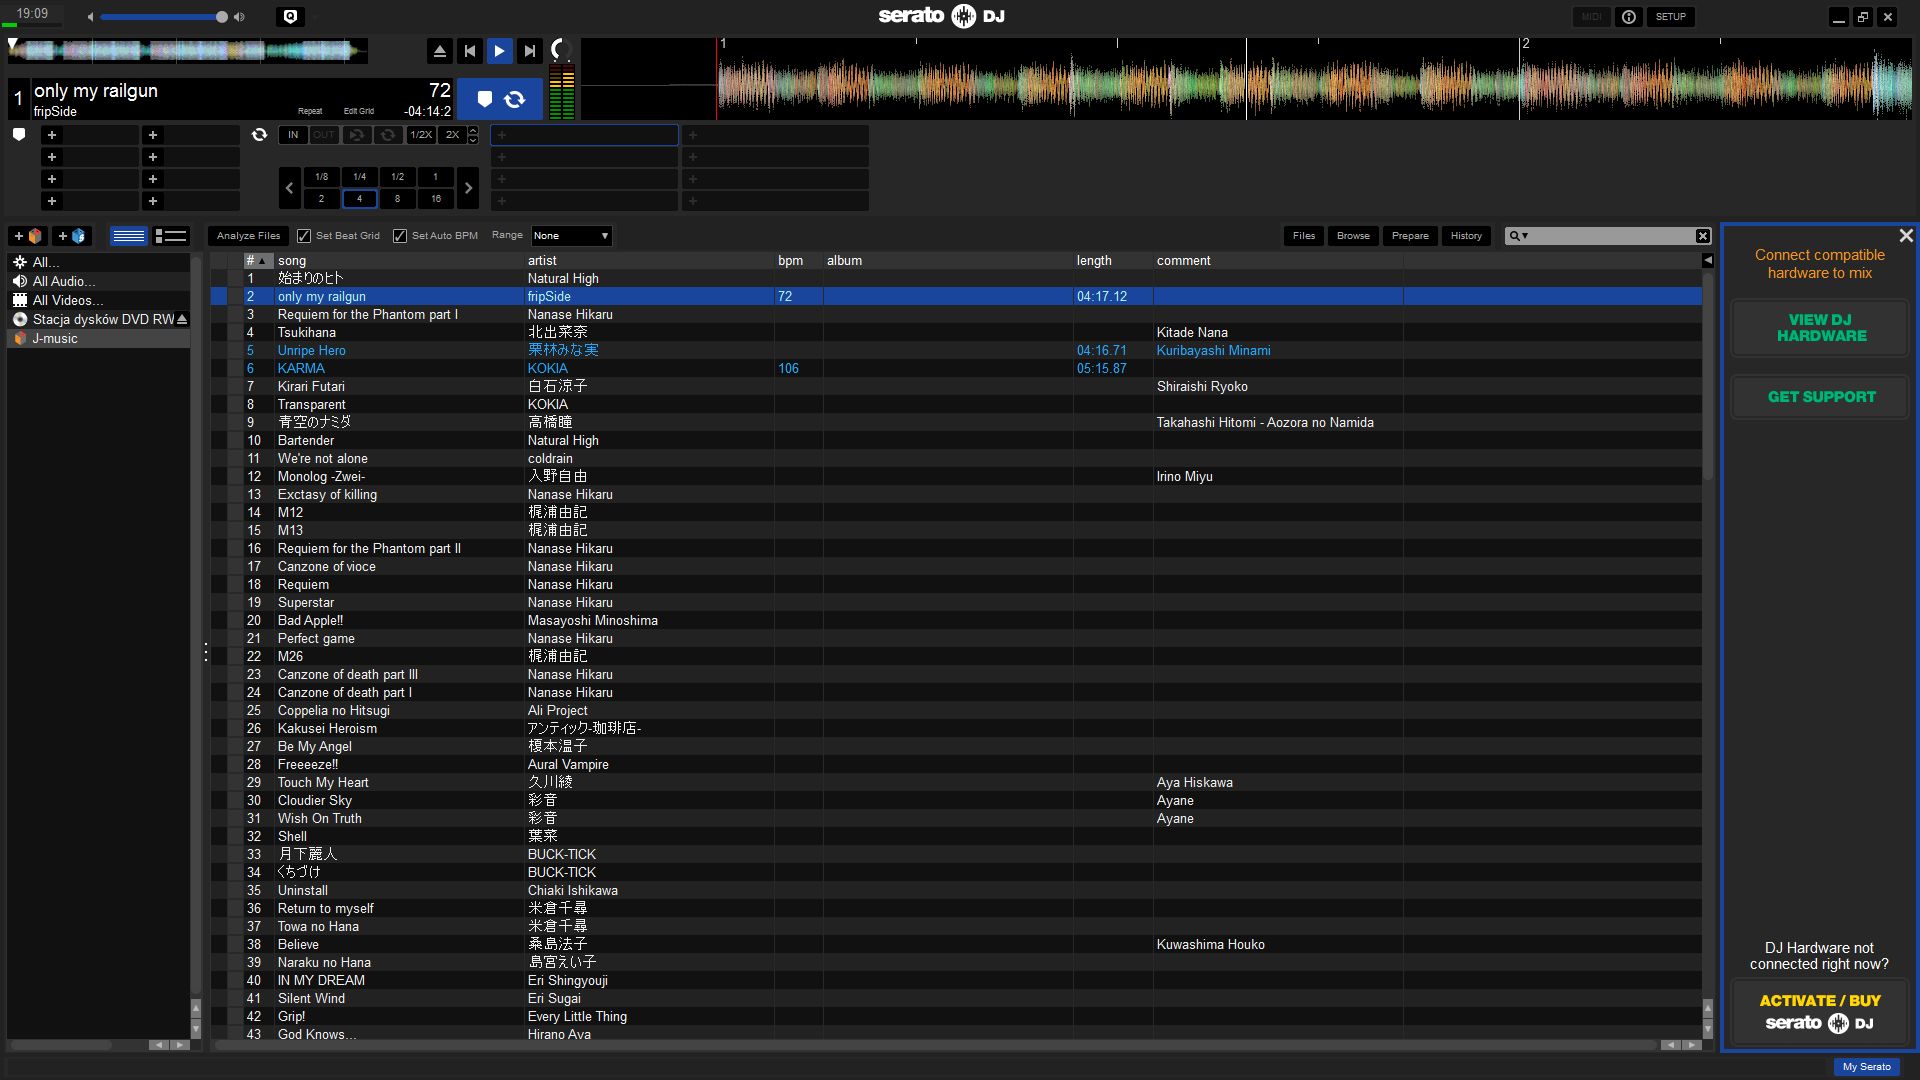 Serato DJ Pro 3.0.12.266 download the new version